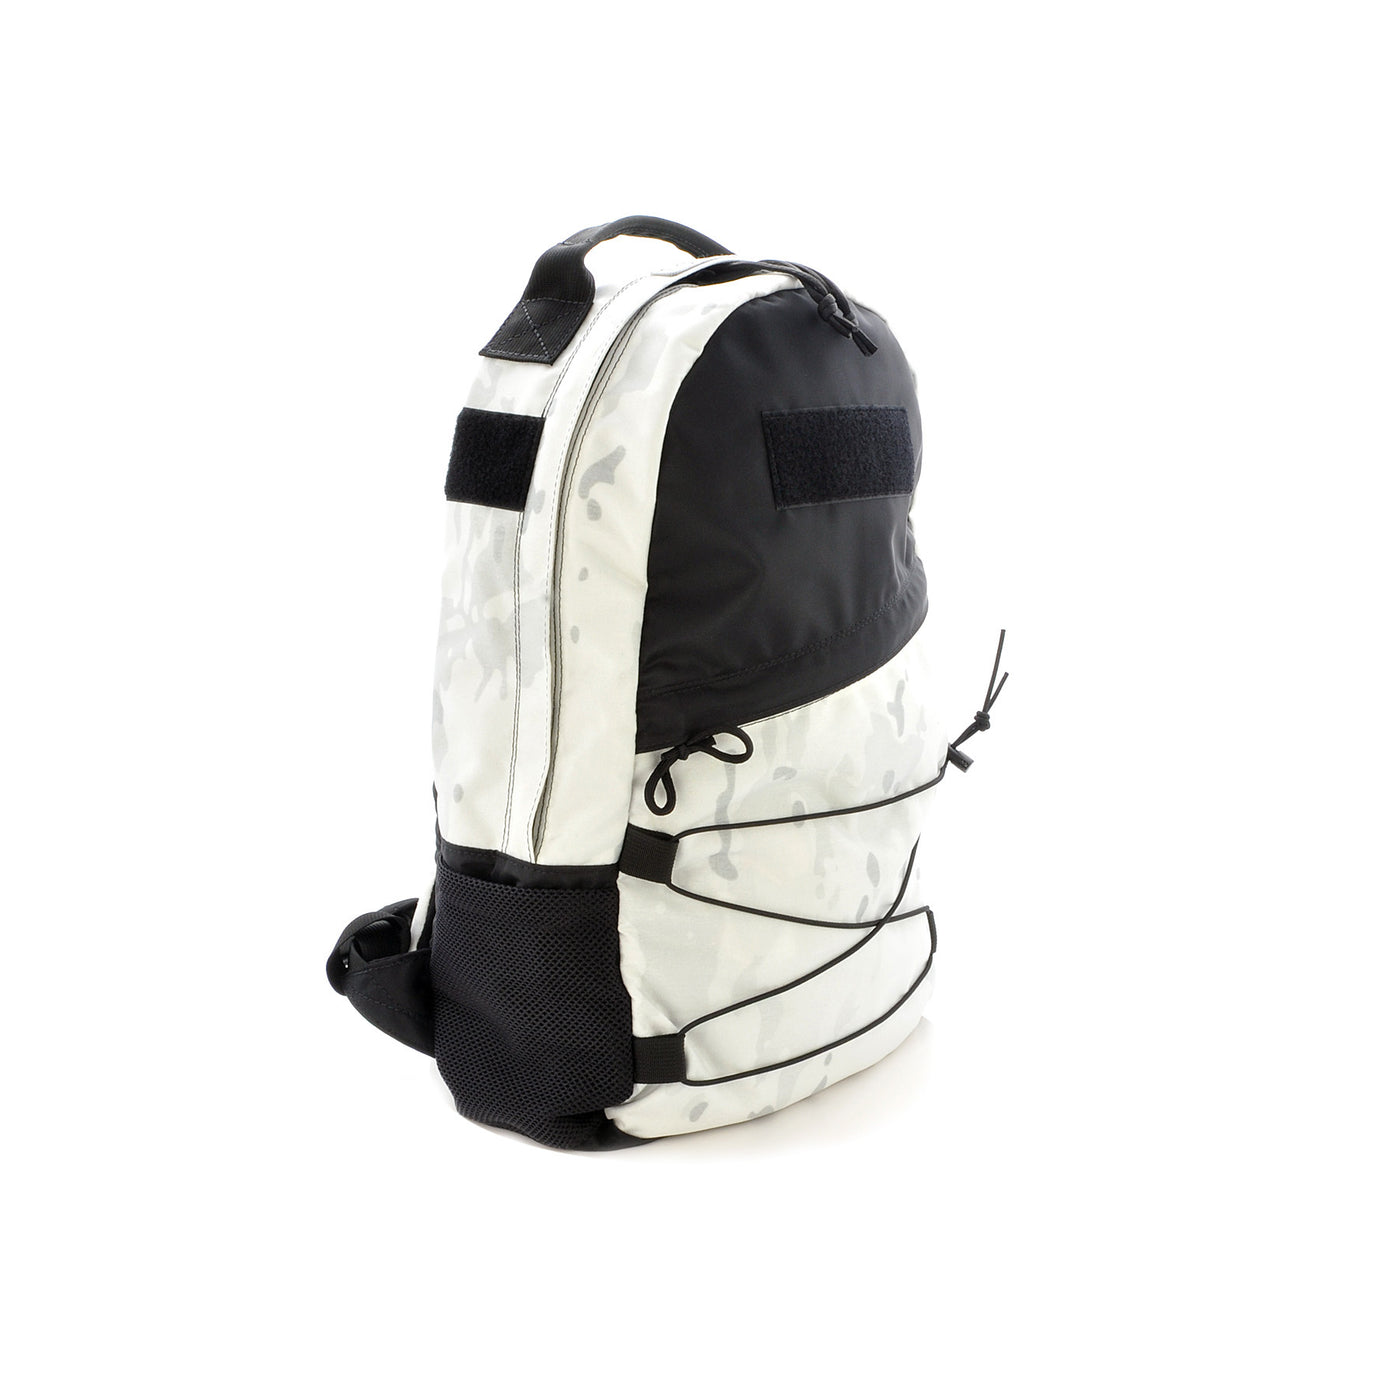 OFF-WHITE Logo Backpack Black/White